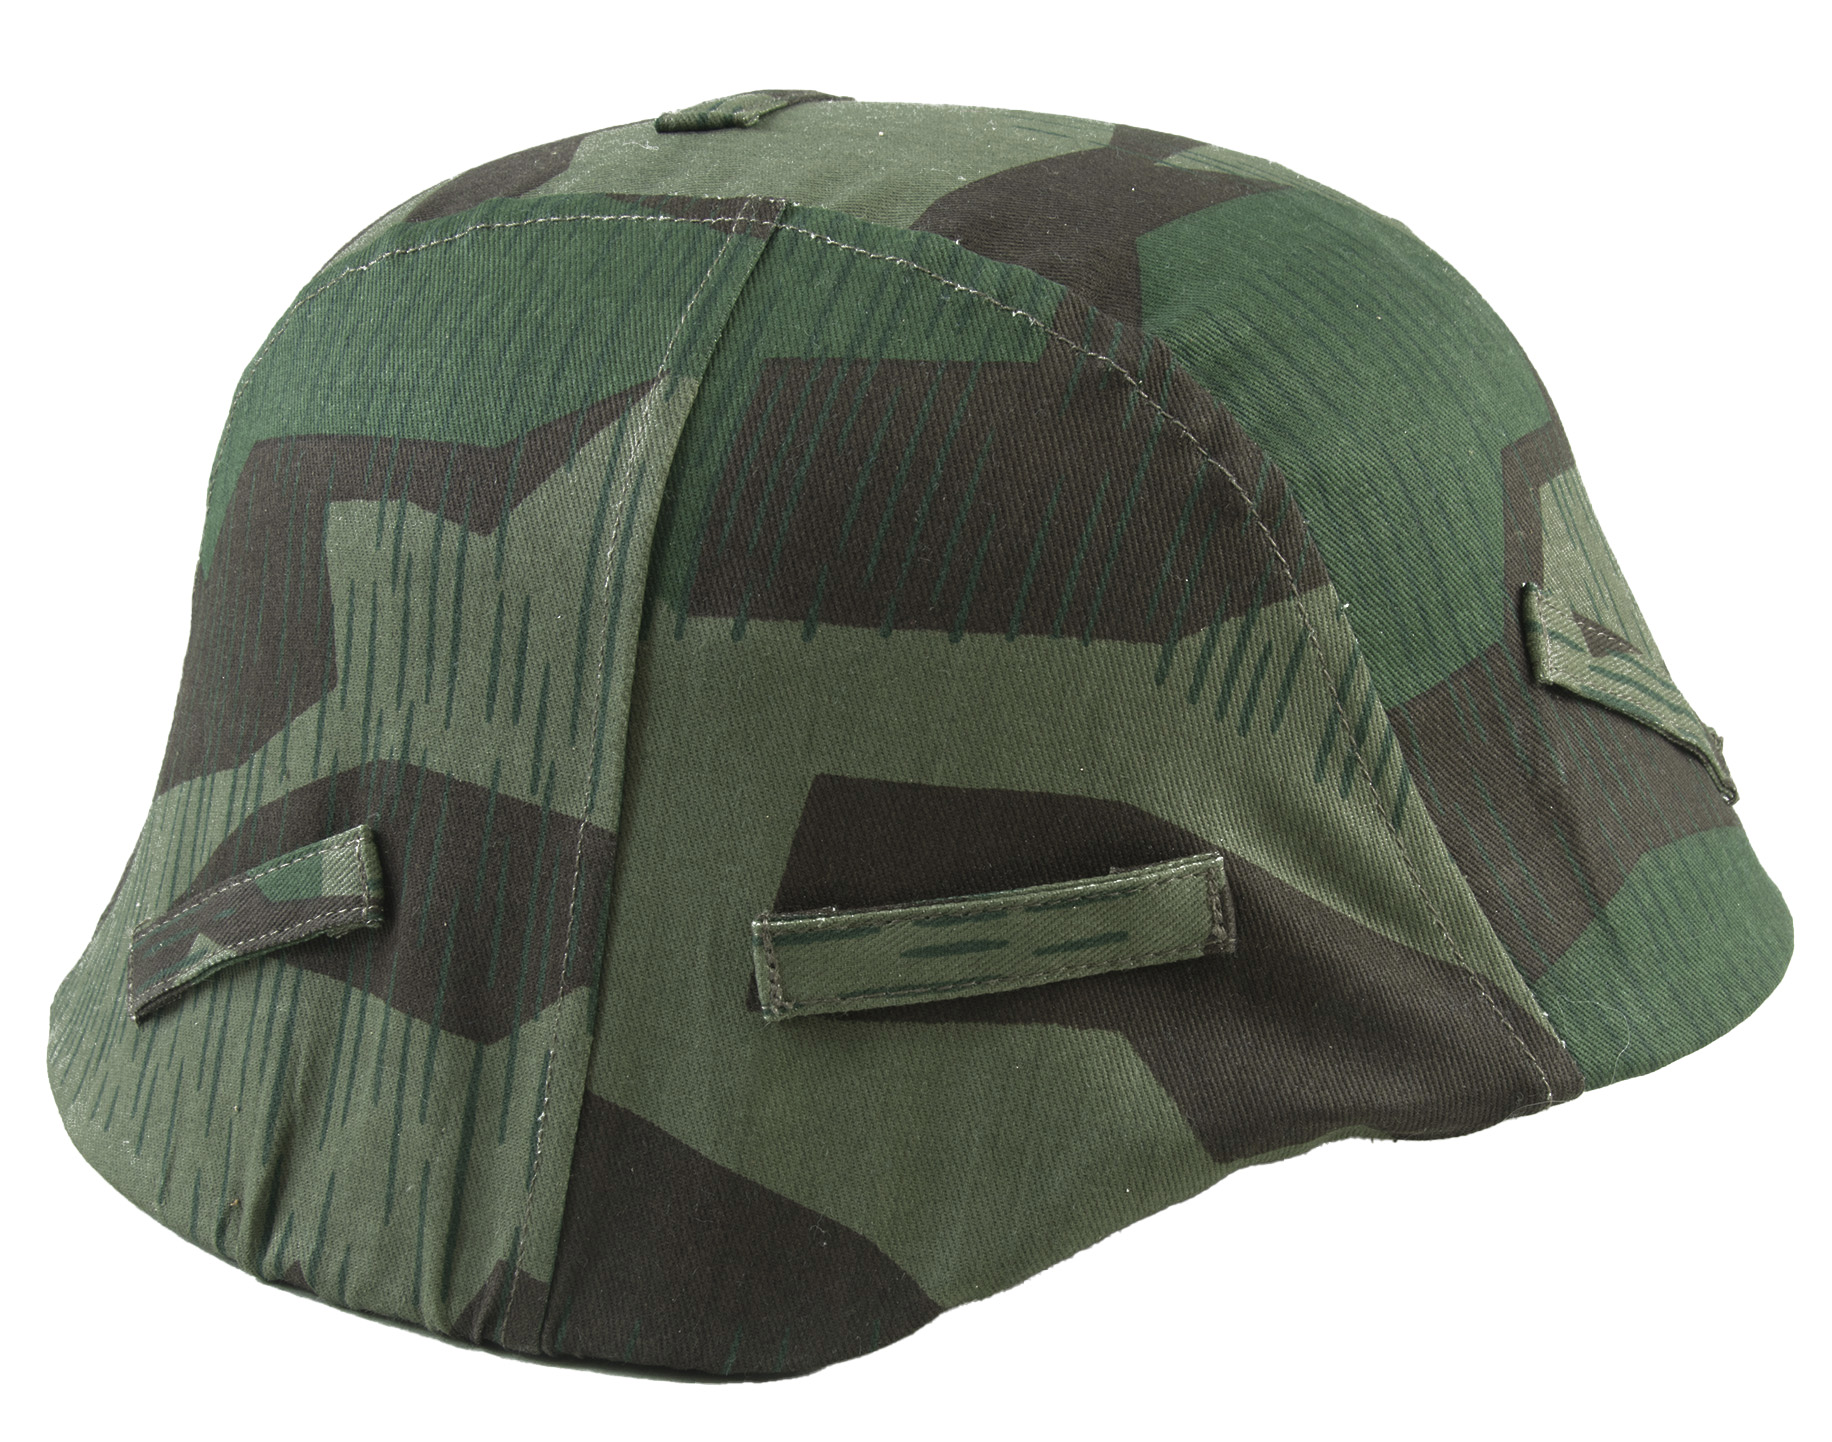 Wehrmacht Helmet Covers